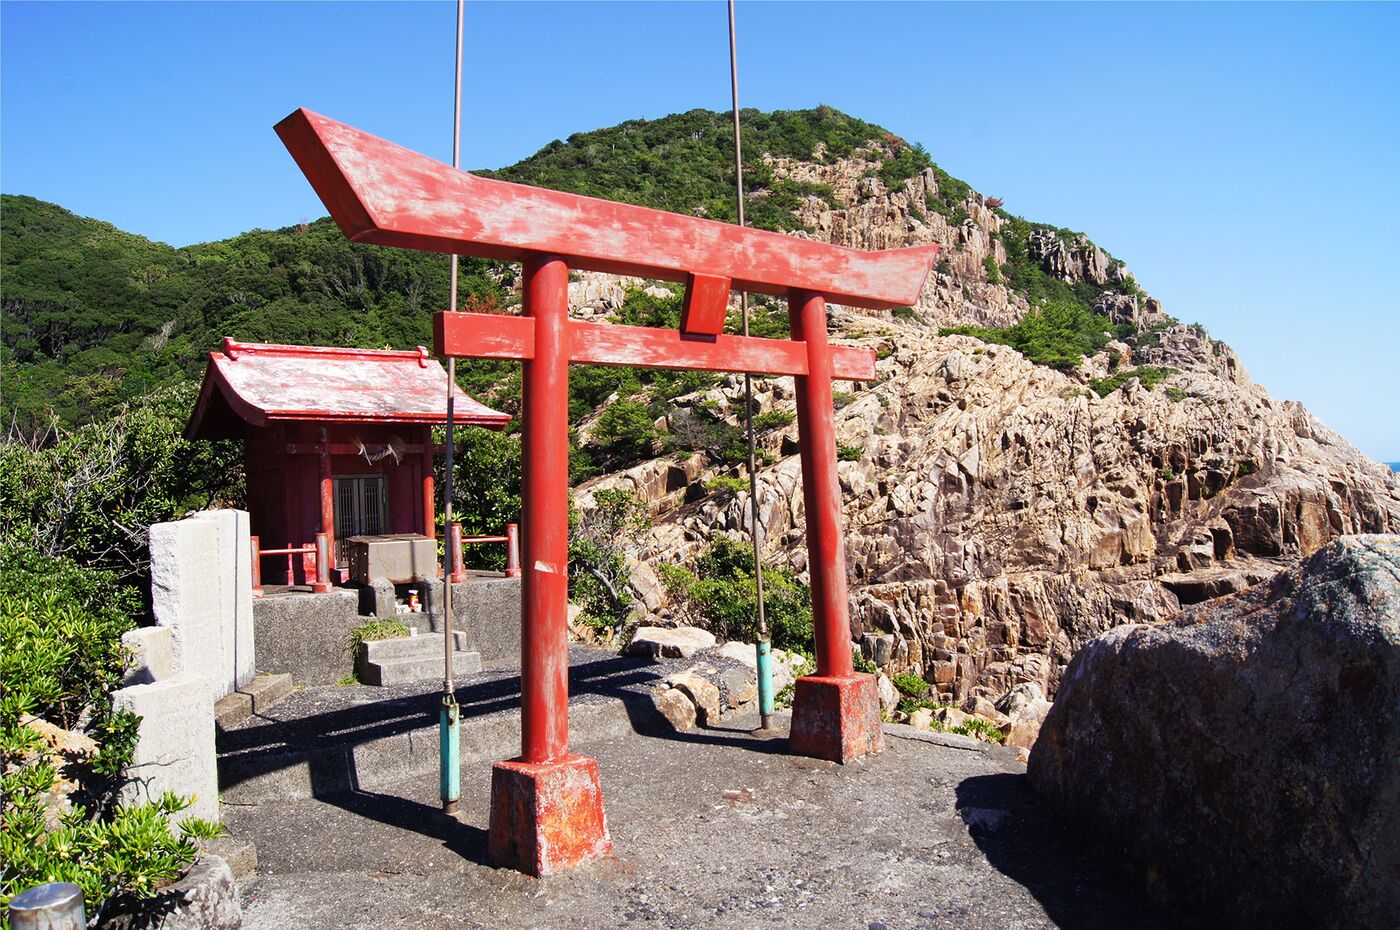 竜宮神社 | 観光スポット検索 | 高知県観光情報Webサイト「こうち旅ネット」